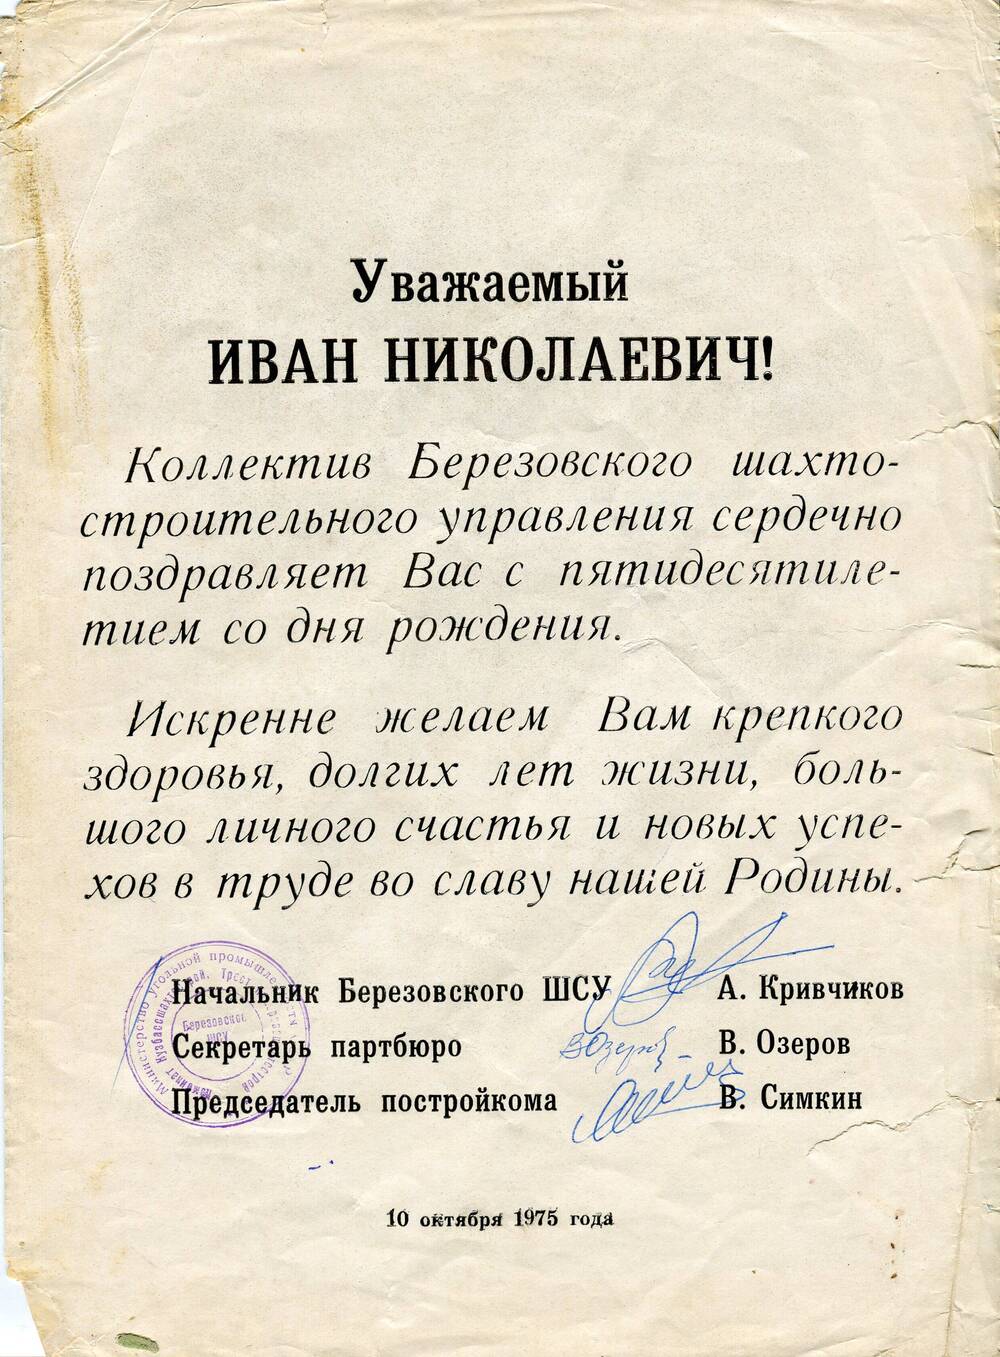 Поздравительный адрес Гулину Ивану Николаевичу в честь 50-летия со дня рождения.